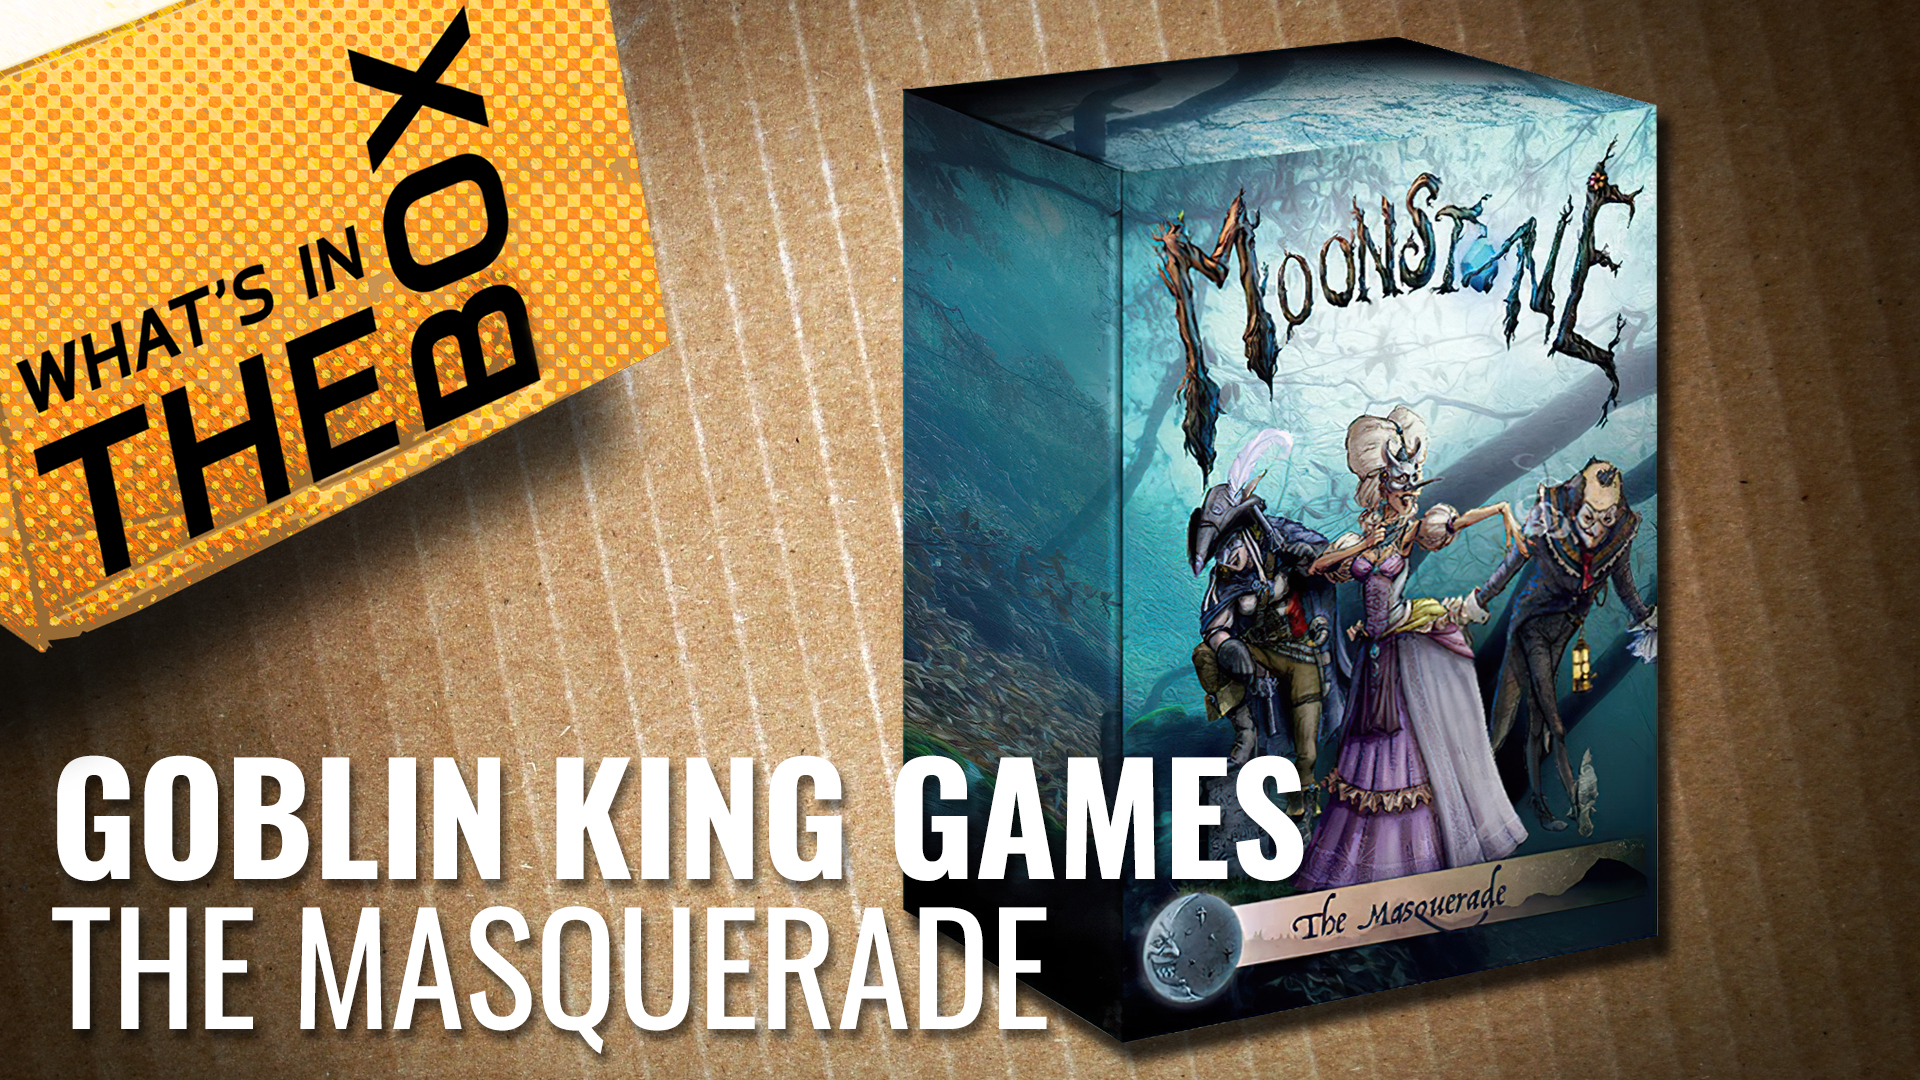 Goblin King Games - The masquerade coverimage